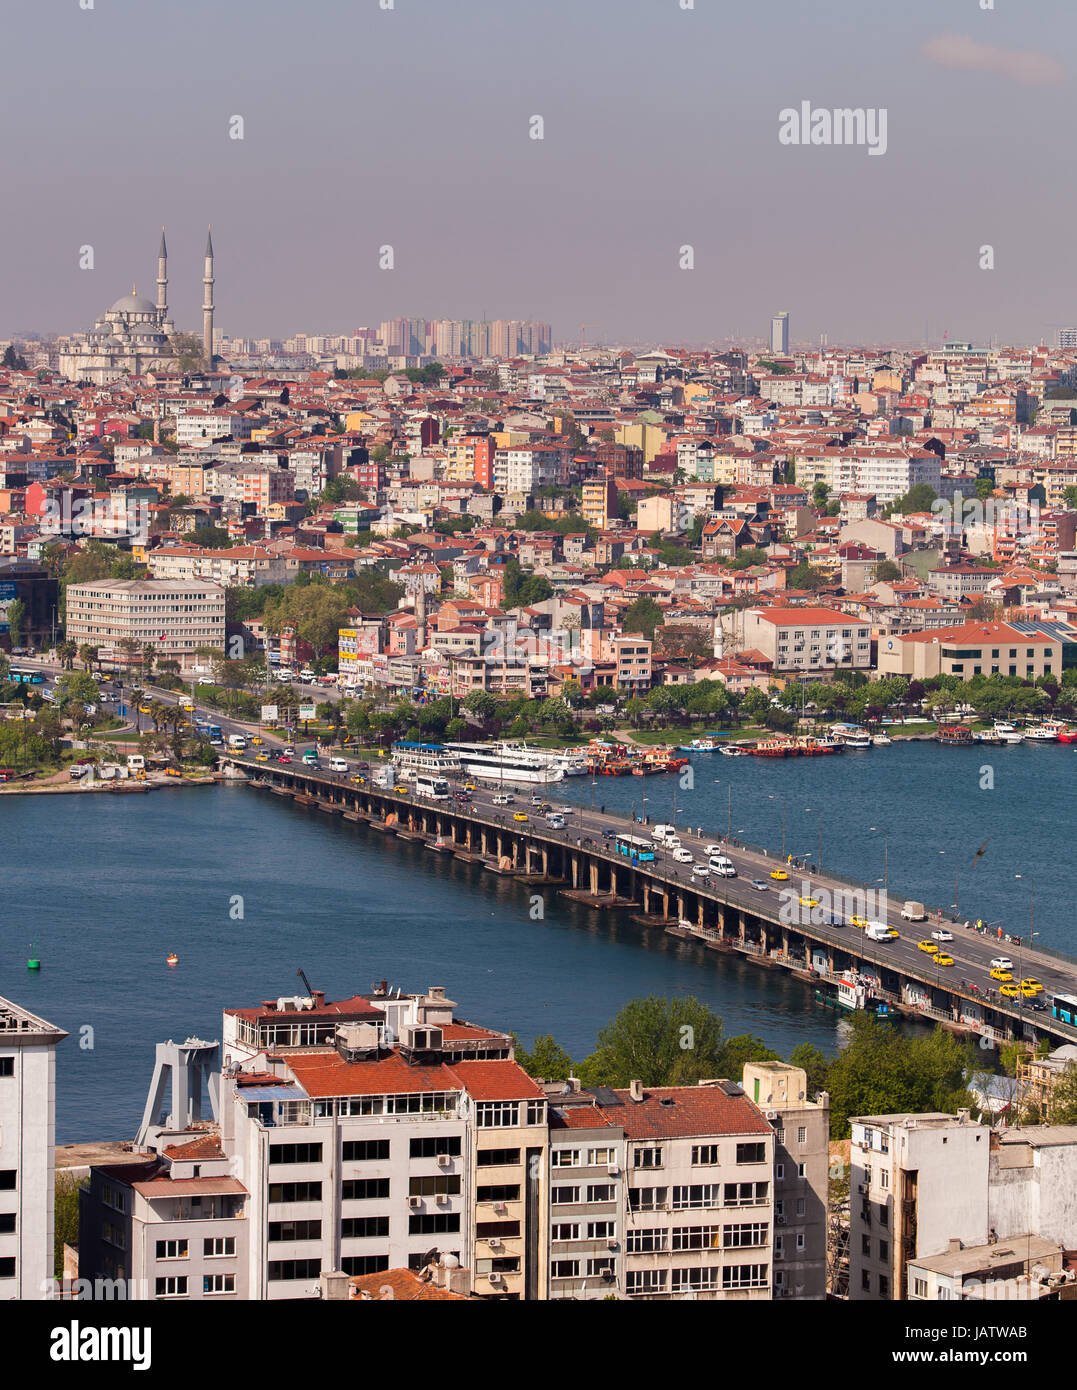 ISTANBUL, Türkei – APRIL 28: Die Atatürk-Brücke über den Bosporus in Istanbul, Türkei vor Anzac Day am 28. April 2012.  Der Bosporus teilt der Türkei zwischen Europa und Asien. Stockfoto